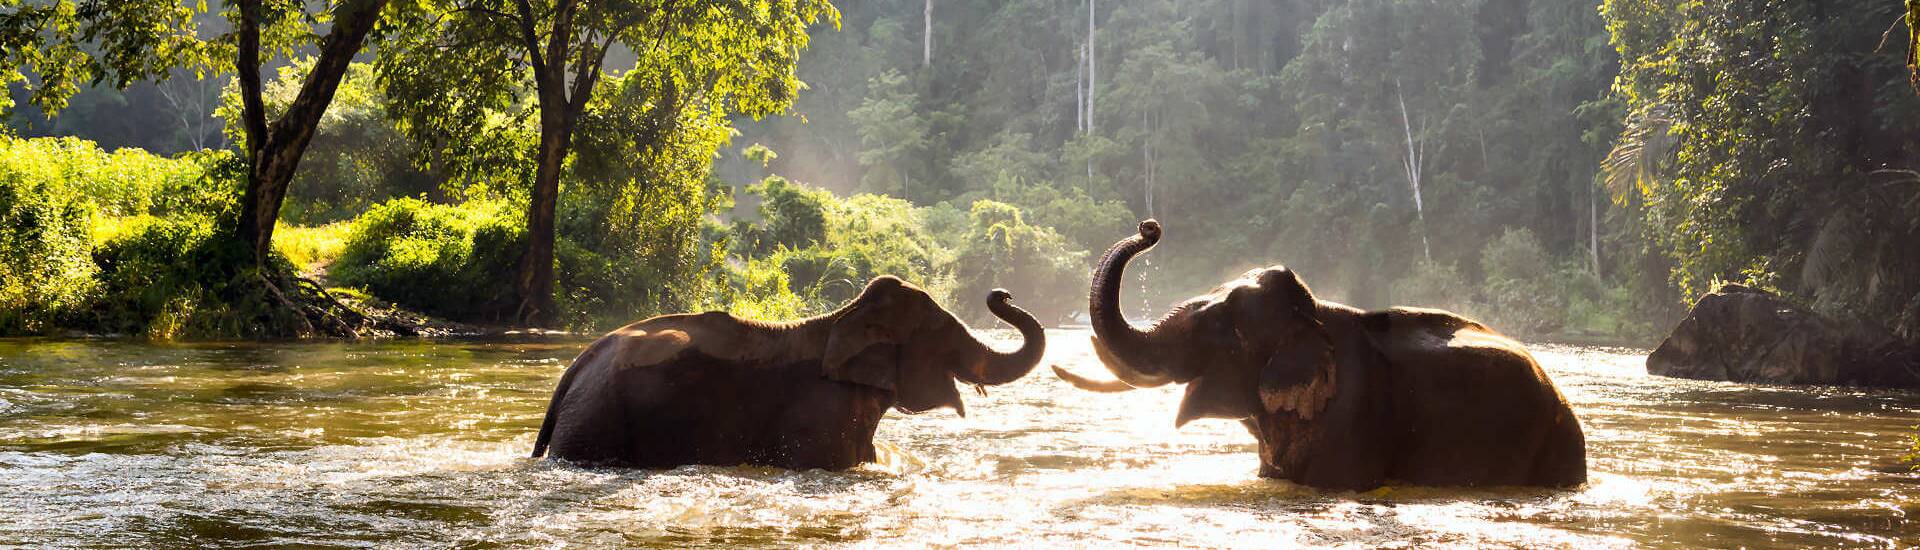 Elefanten in Thailand, faszinierende Sehenswürdigkeiten in Südostasien